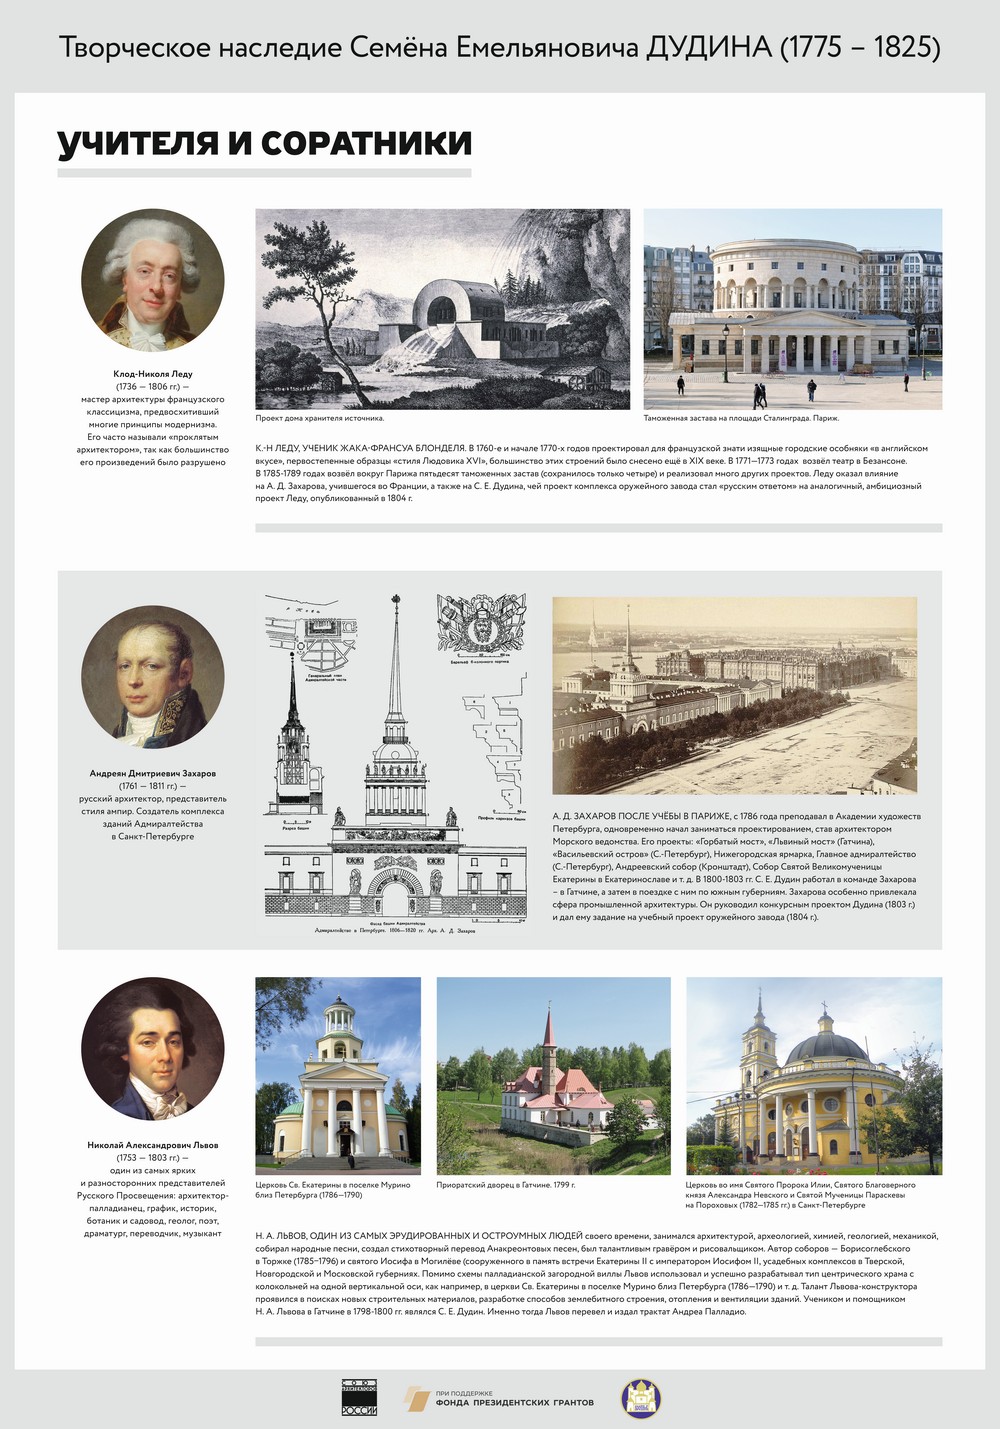 выставка «Наследие Дудина», посвященная 245-летию архитектора Дудина Семена Емельяновича (1775—1825)